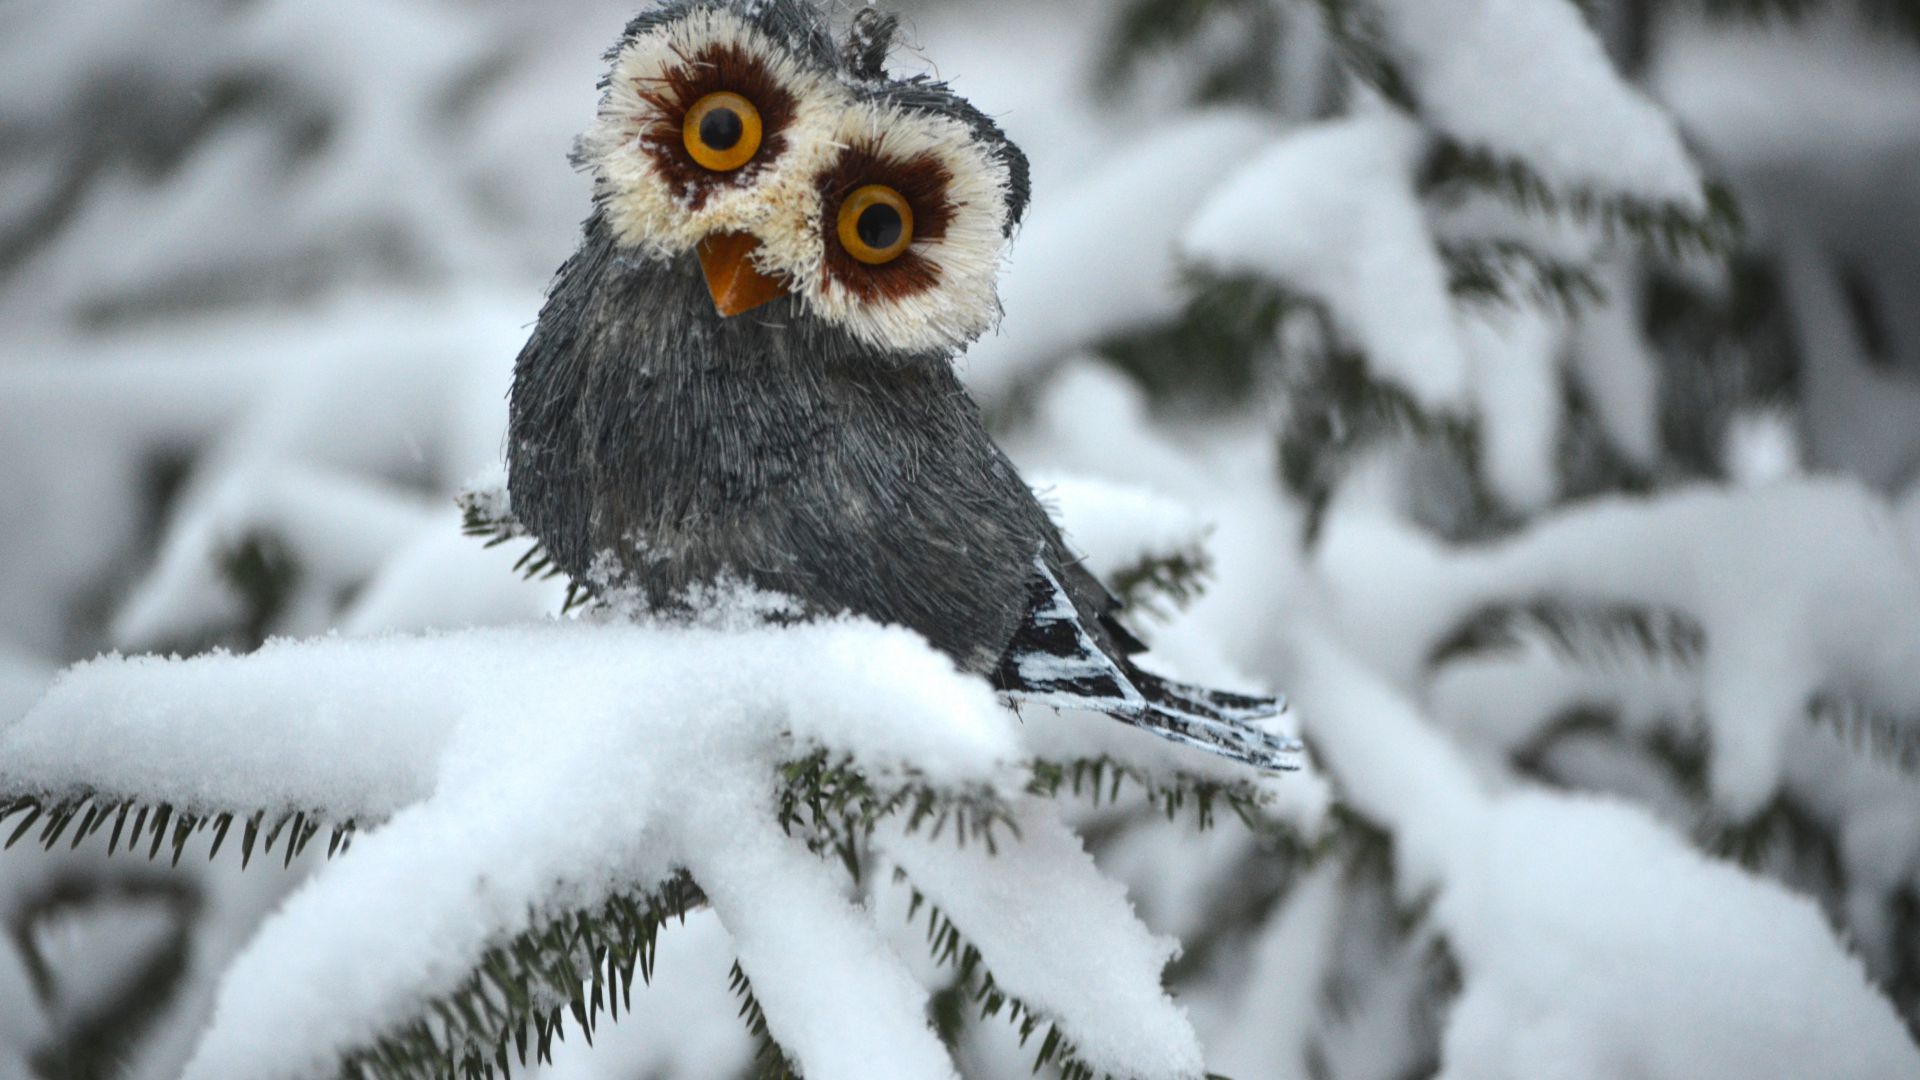 Сова, сосны, снег, милые животные, забавный, Owl, pines, snow, cute animals, funny (horizontal)